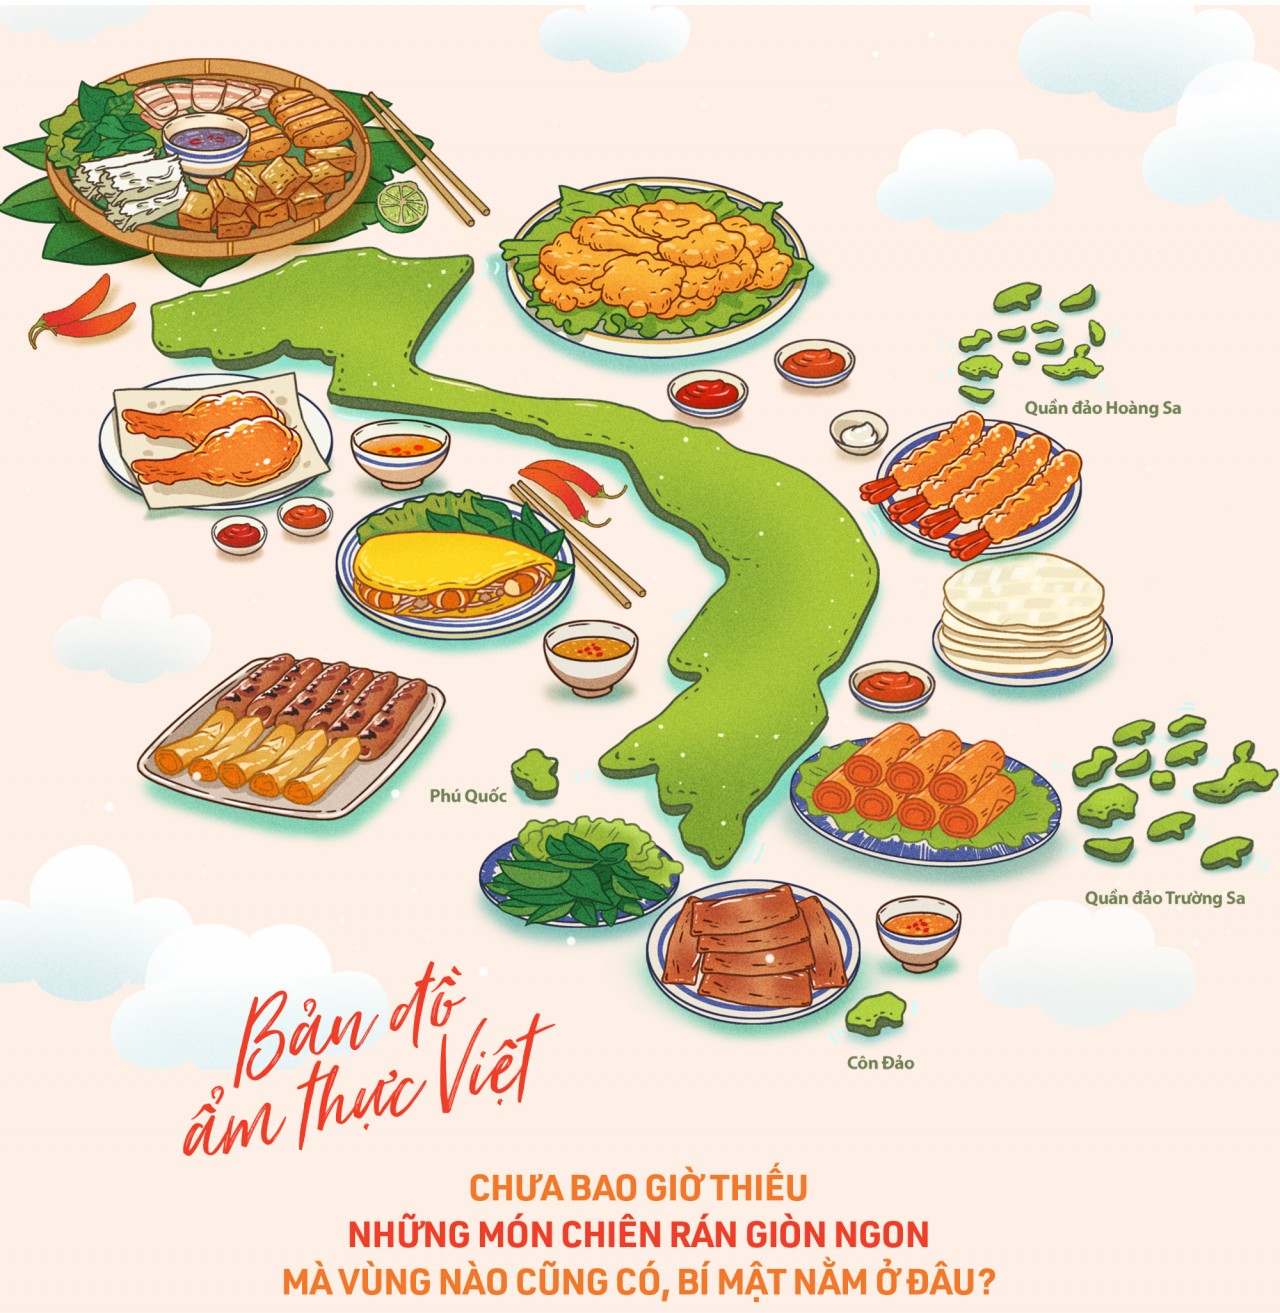 Thưởng thức ẩm thực Việt Nam - một trải nghiệm vô cùng đặc sắc và thú vị. Từ phở, bún chả, bánh xèo cho đến cơm tấm, bún bò Huế, người ta sẽ không thể rời xa những món ăn này. Hãy thử đến một trong những quán ăn nổi tiếng ở khắp mọi miền đất nước để khám phá thế giới ẩm thực đa dạng của Việt Nam.